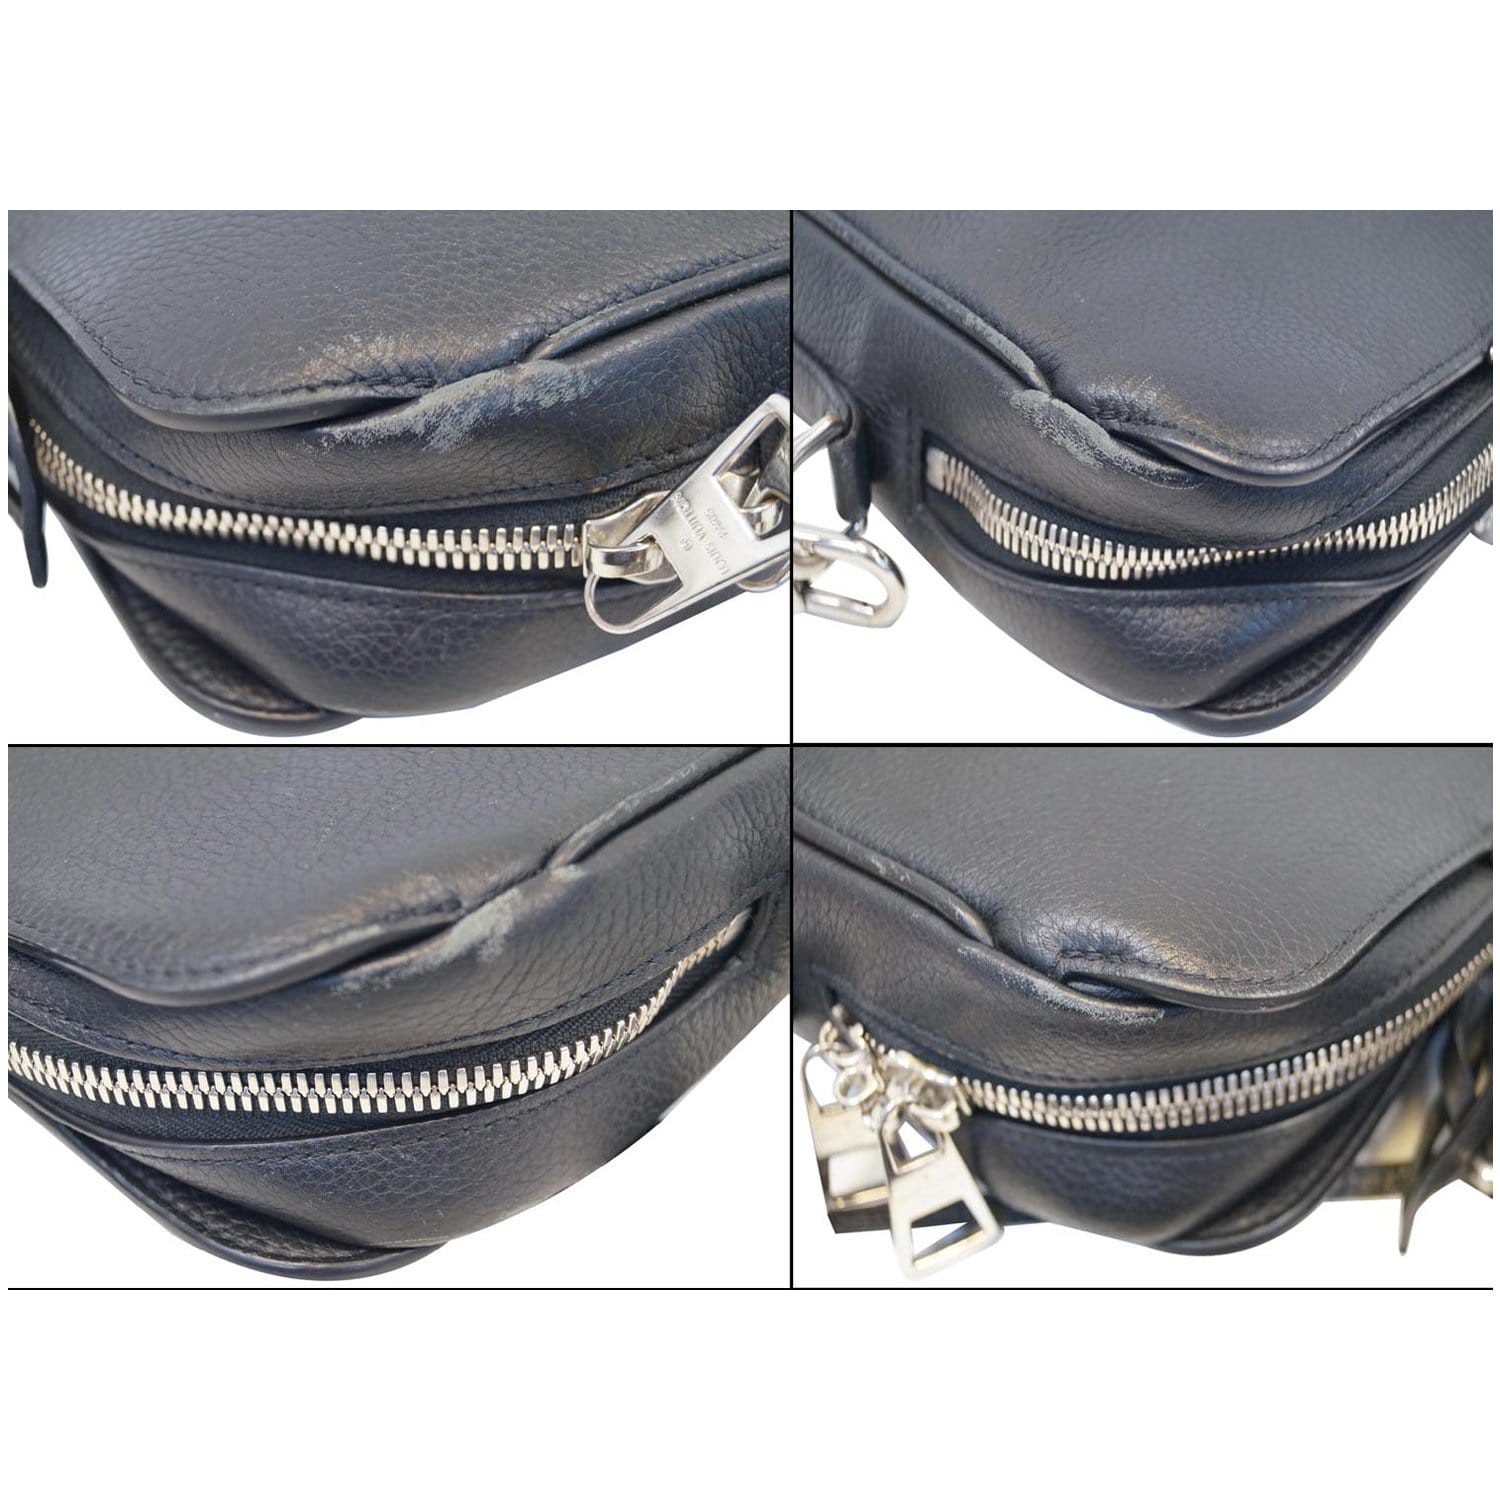 Louis Vuitton Tournon Taurillon Leather Hobo Bag Galet